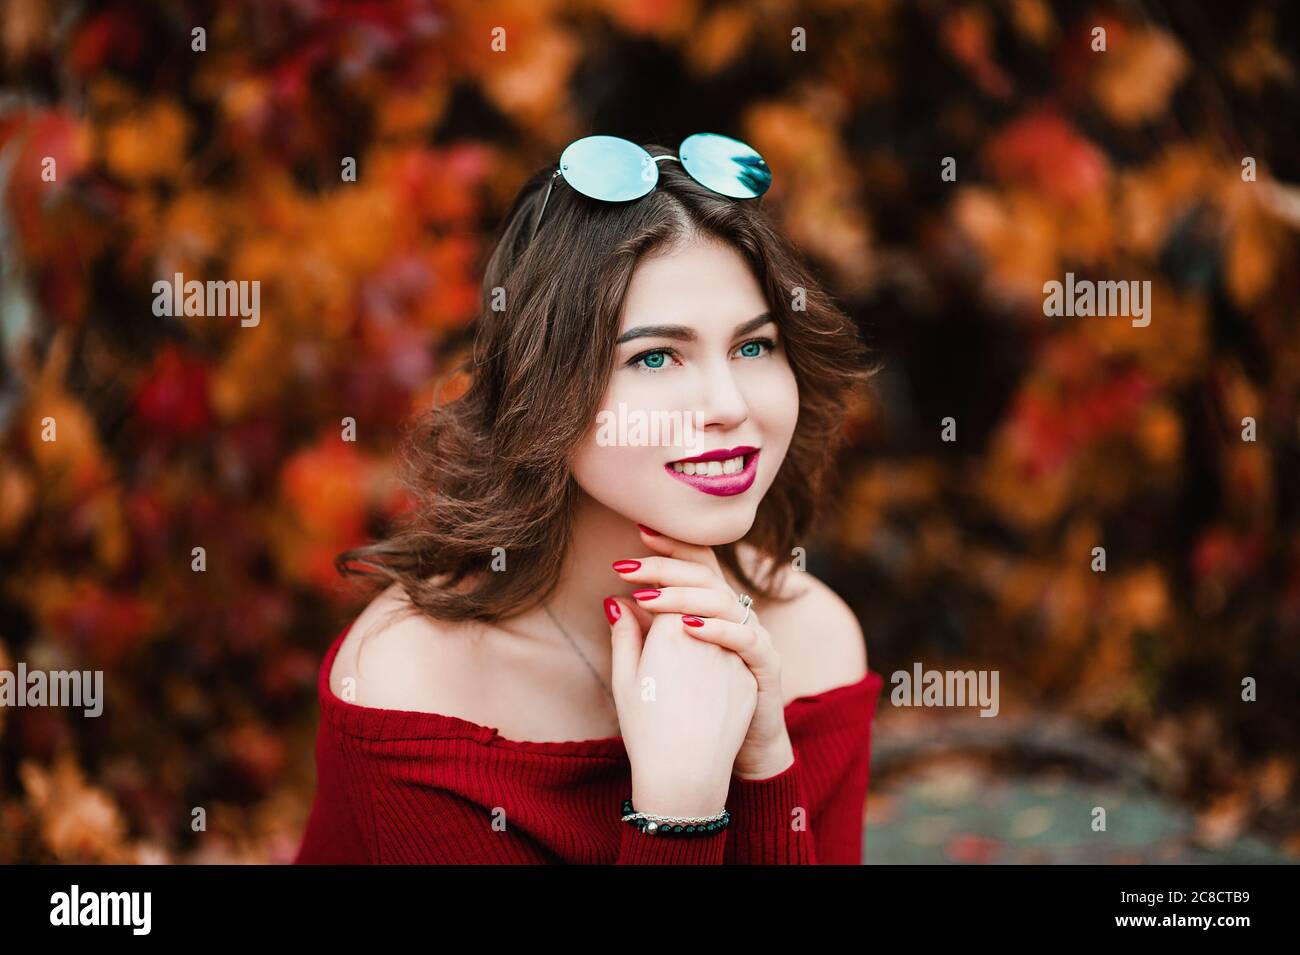 Belle jeune femme décontractée en lunettes assis parmi les feuilles jaunes et rouges dans le parc public, couleurs d'automne fond Banque D'Images